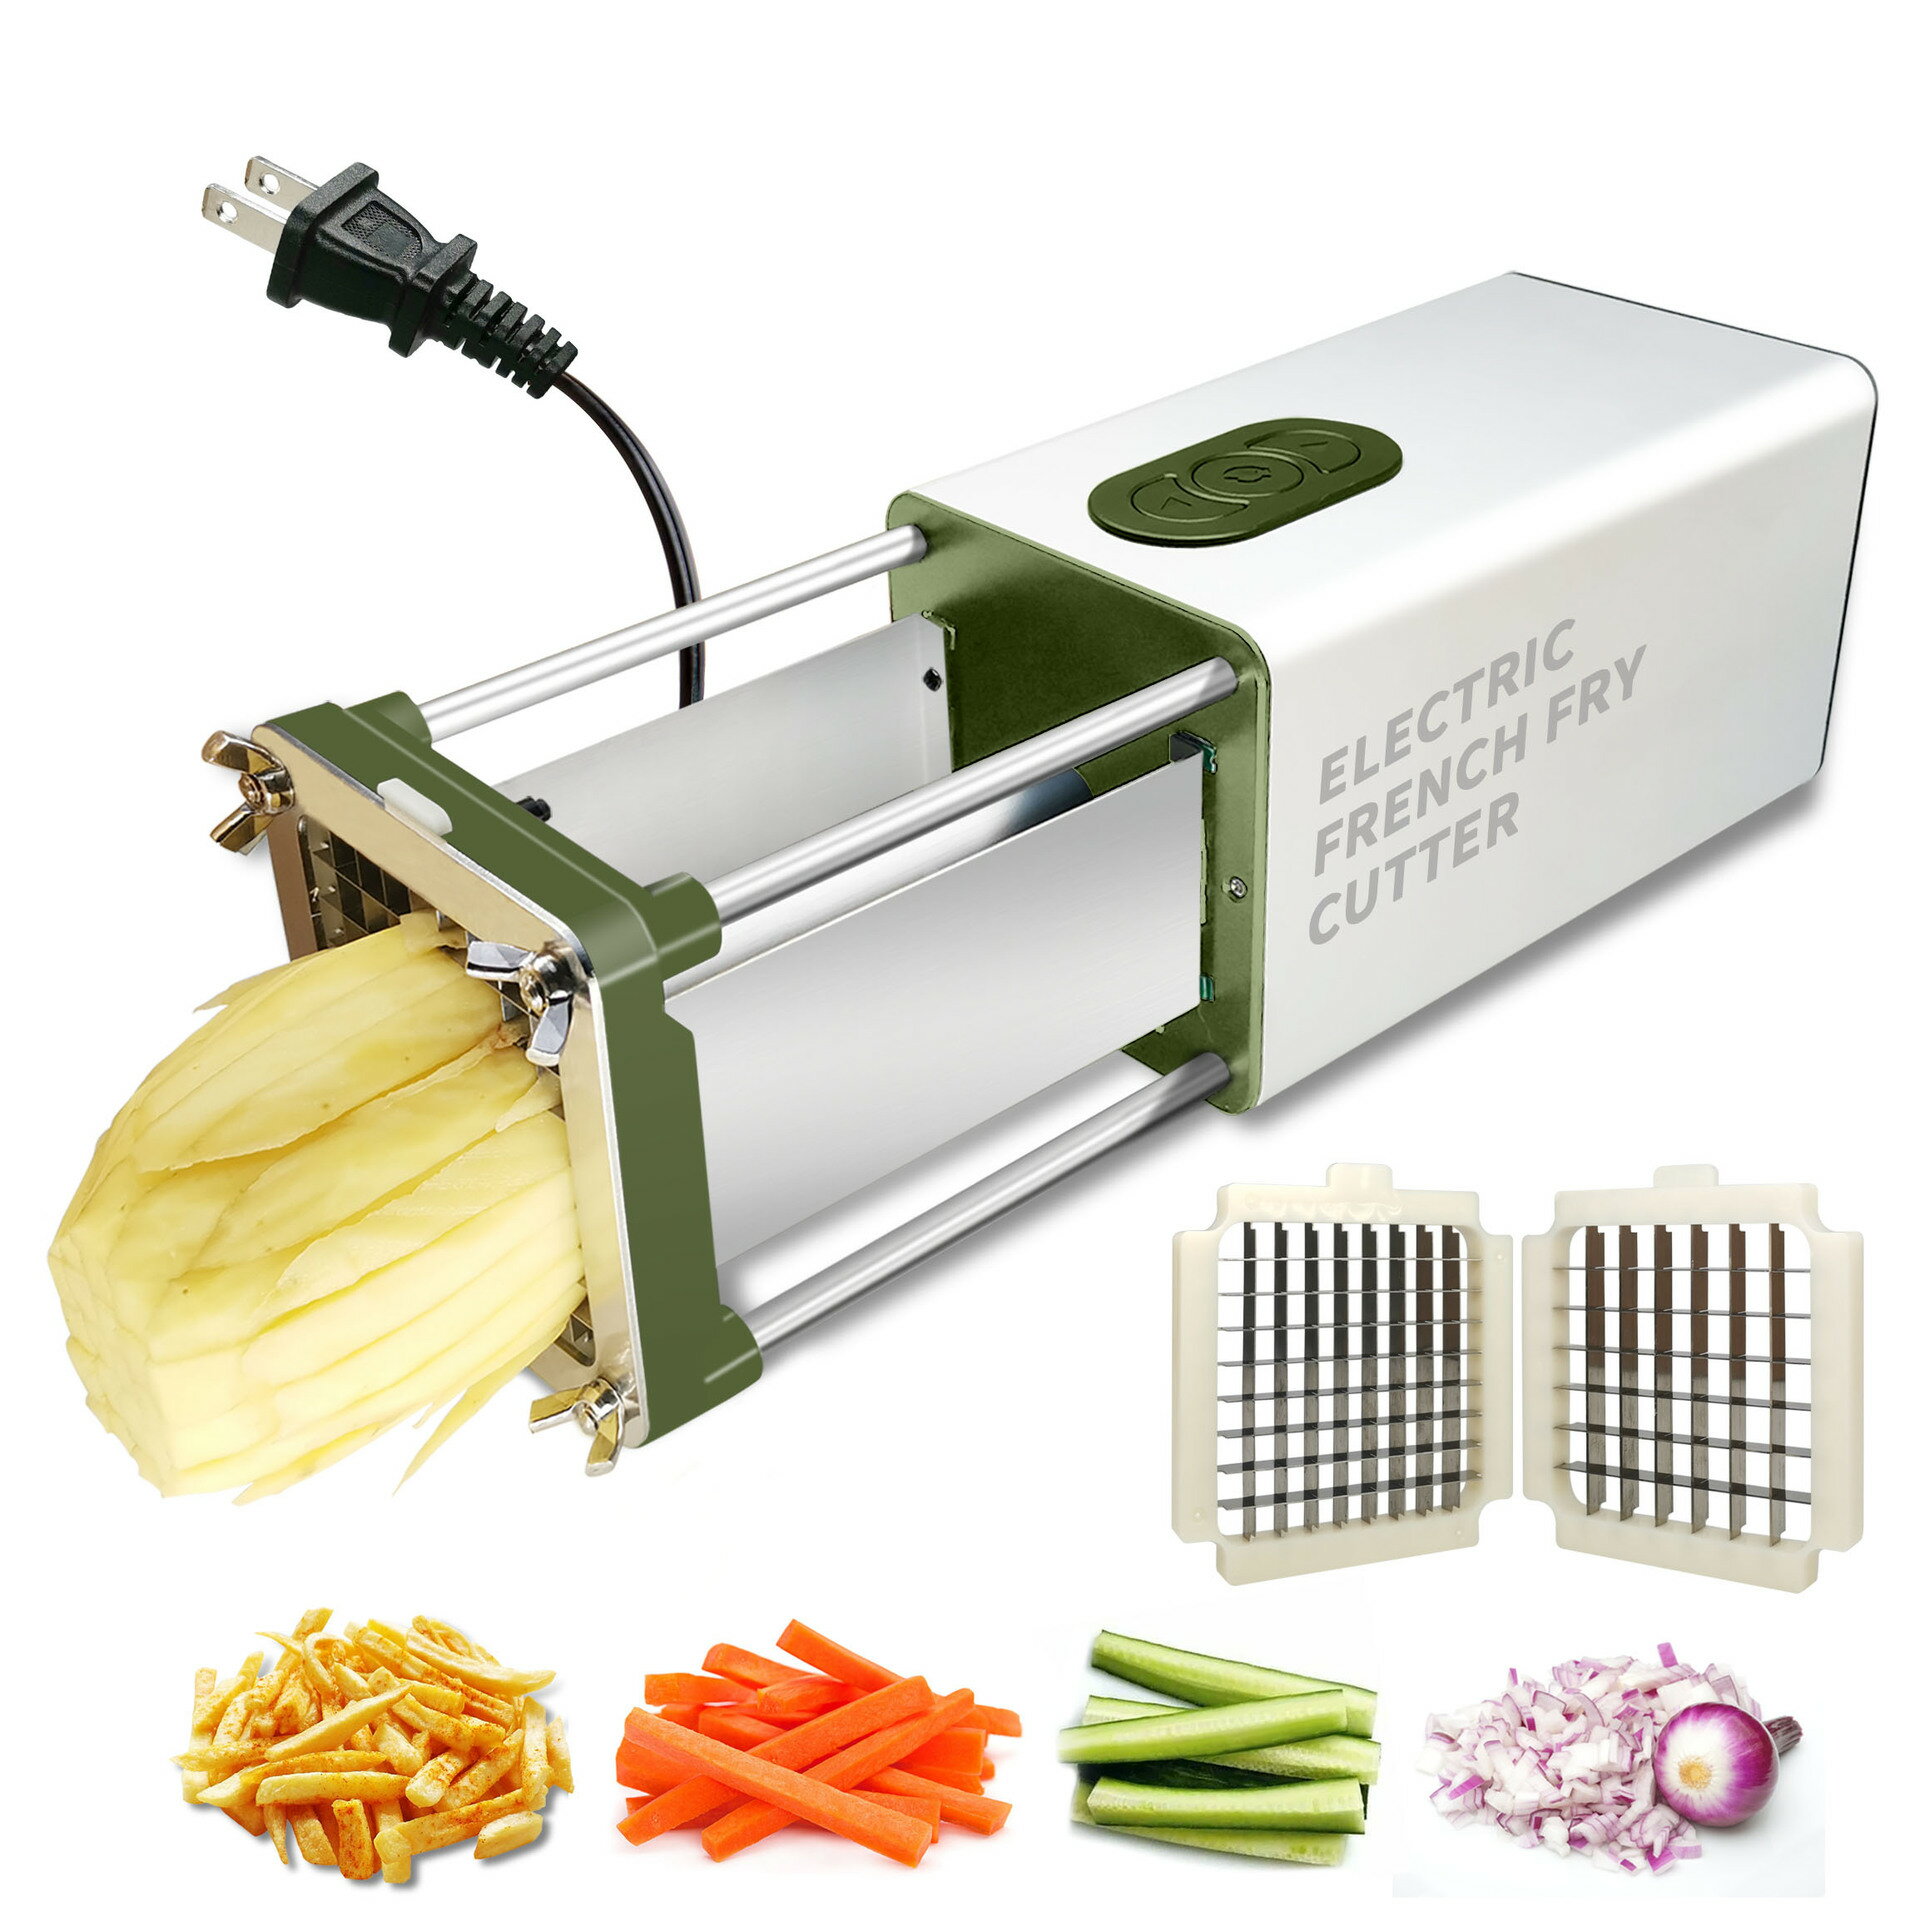 電動薯條機 多功能電動切菜機 商用家用切條切段切丁機器切薯條機